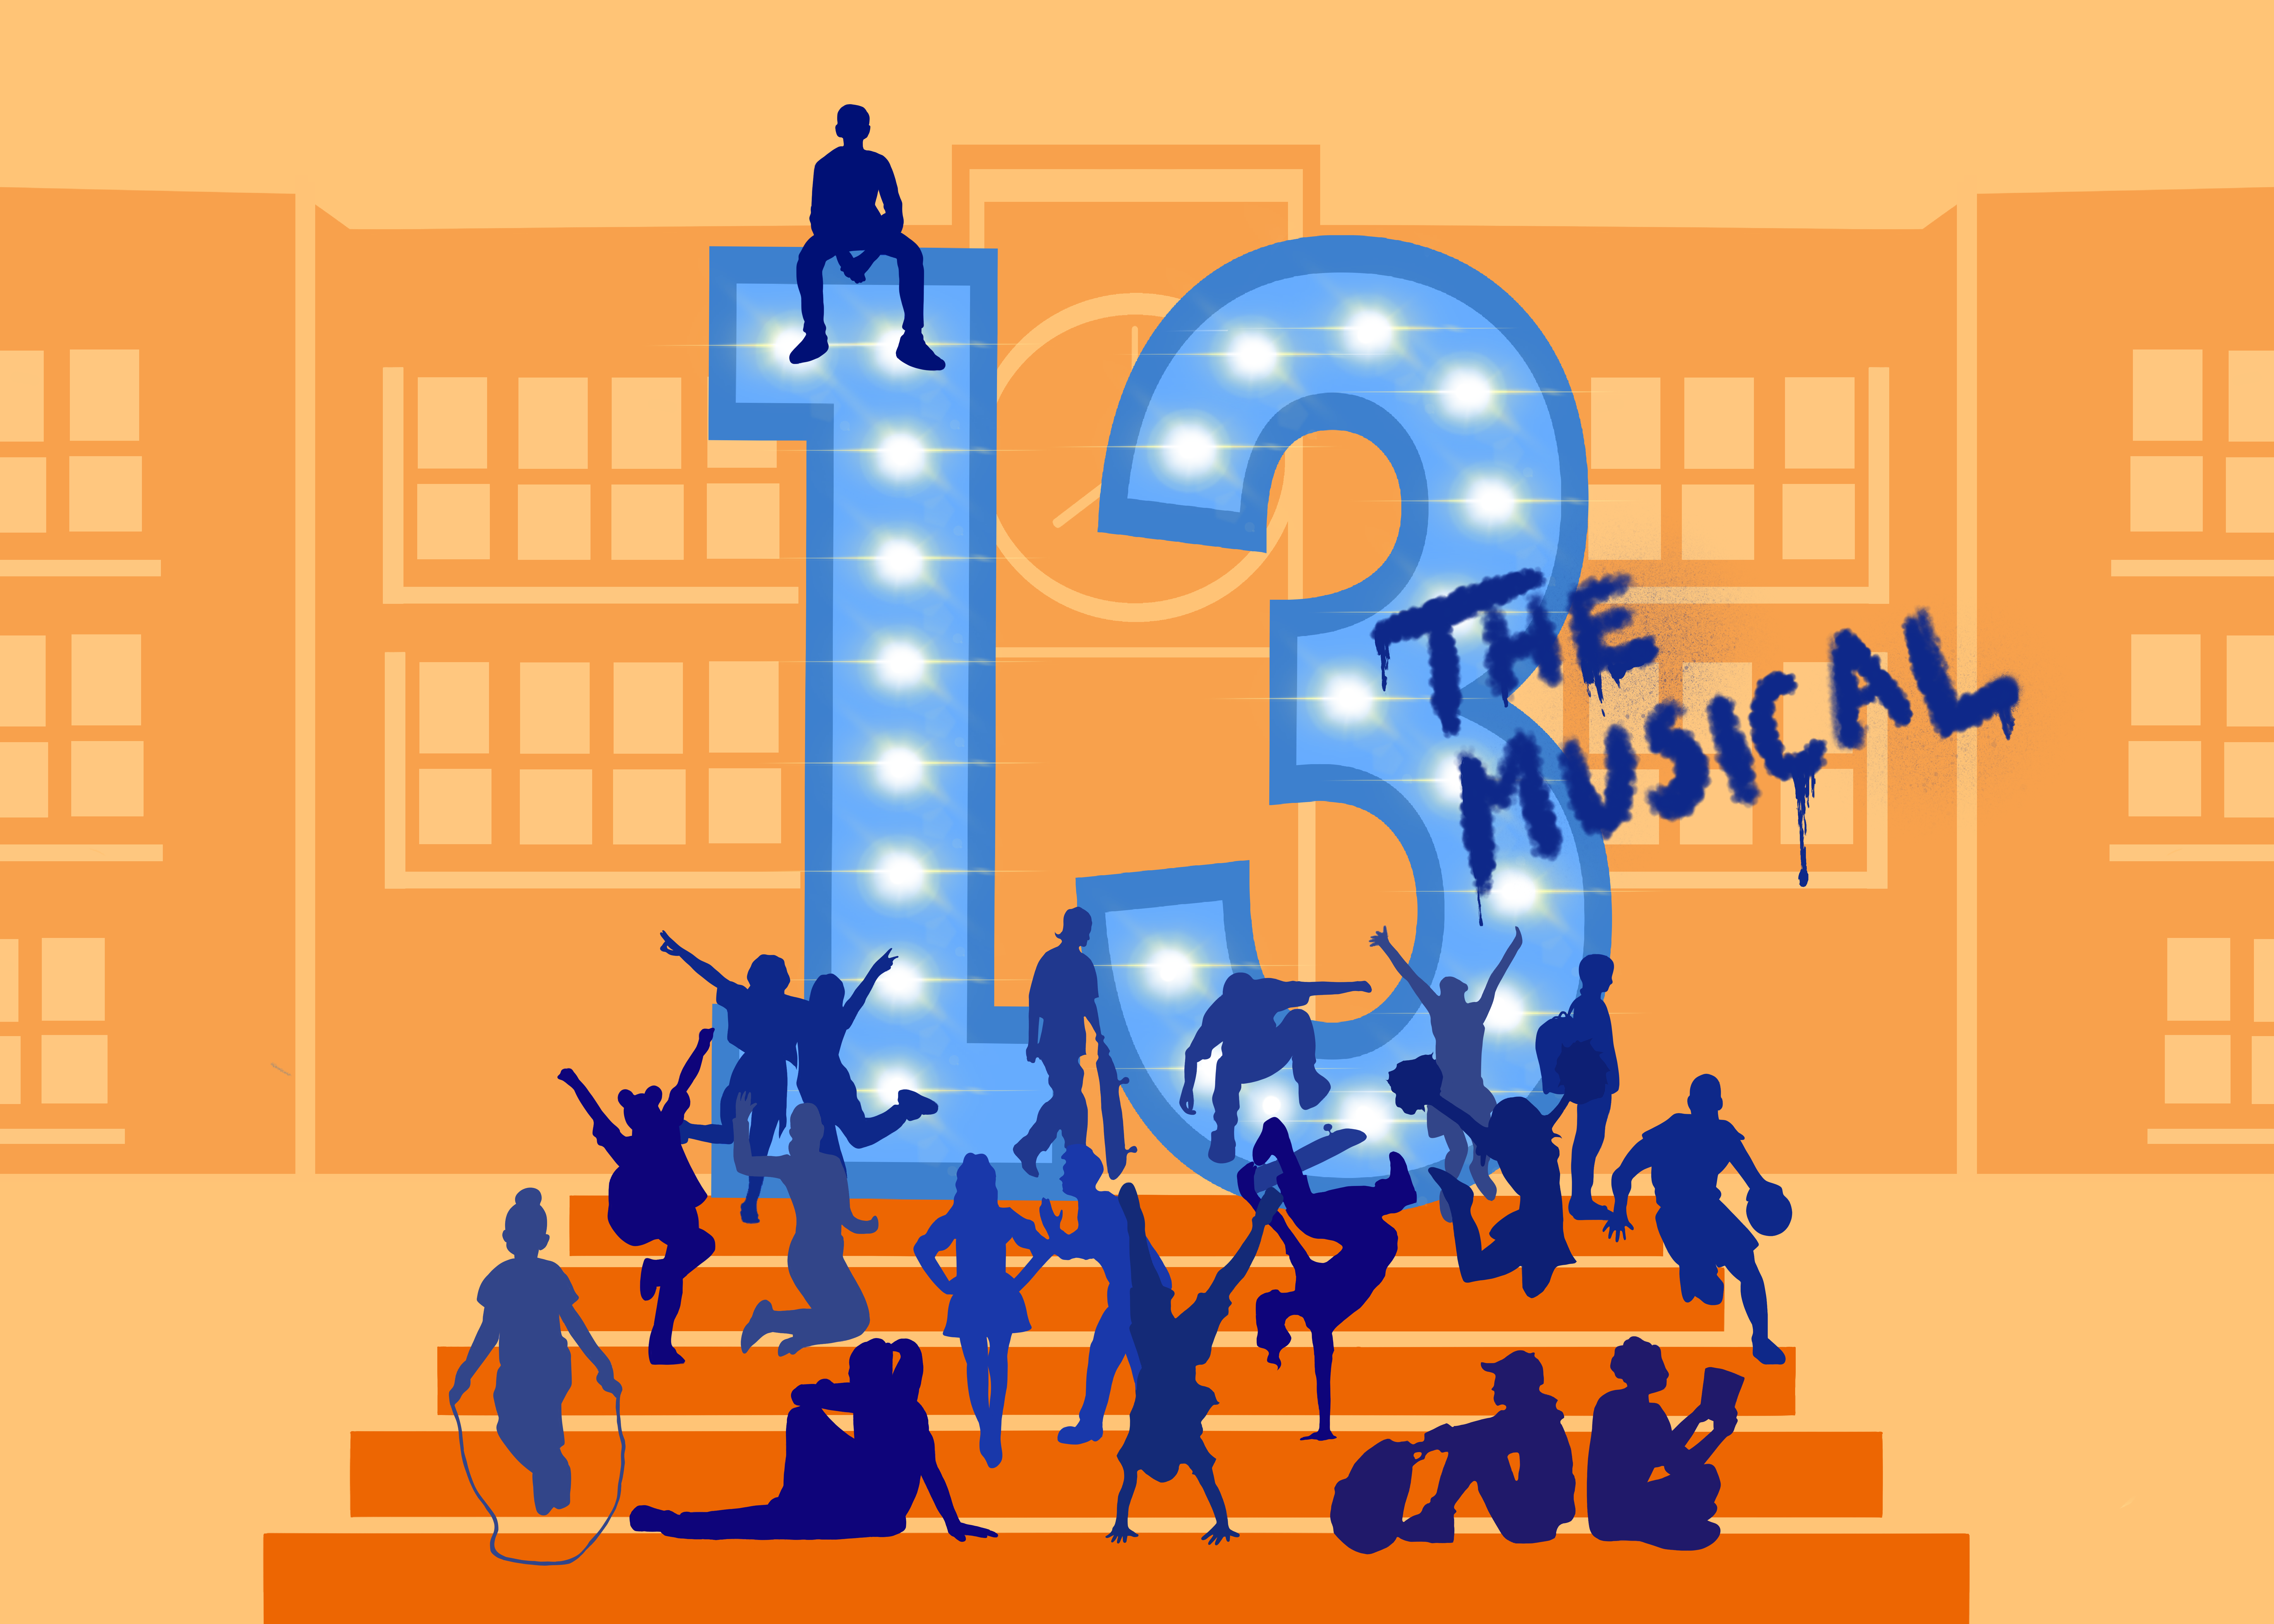 En tecknad bild av en mängd olika barn som står, sitter, hoppar hopprep med mera på en orange trappa. Tretton står utskrivet i enorma siffror, och klottrat på dem står "the musical". I bakgrunden syns en stor skolliknande byggnad.